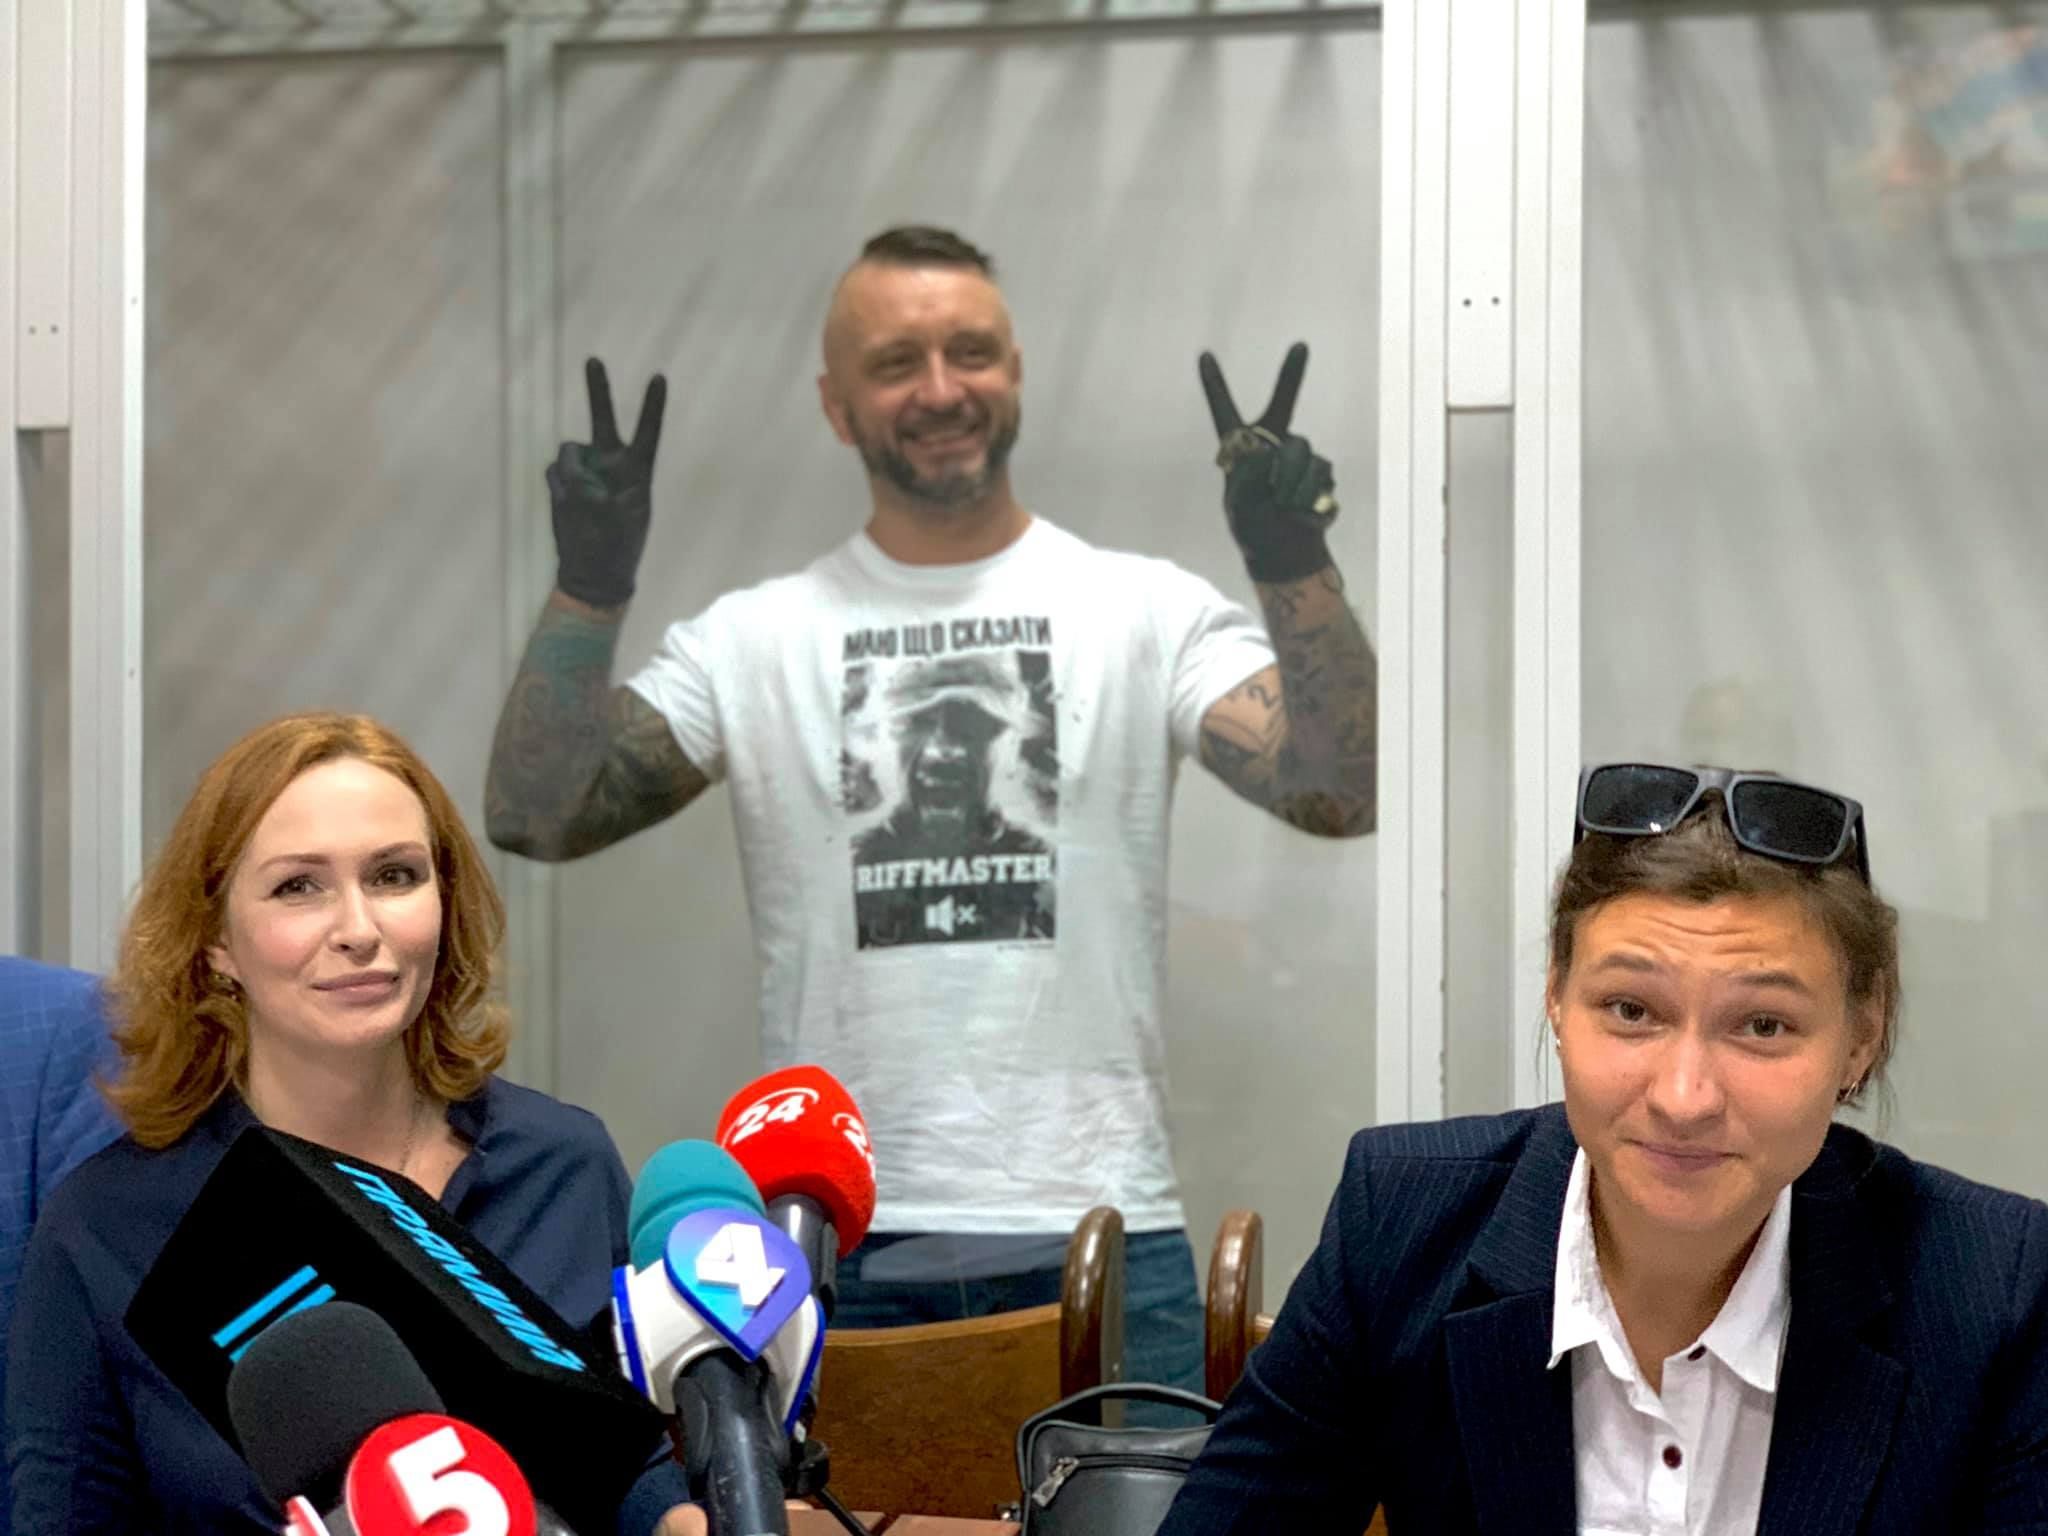 Антоненко, Дугарь та Кузьменко у суді не визнали своєї вини у причетності до вбивства Шеремета